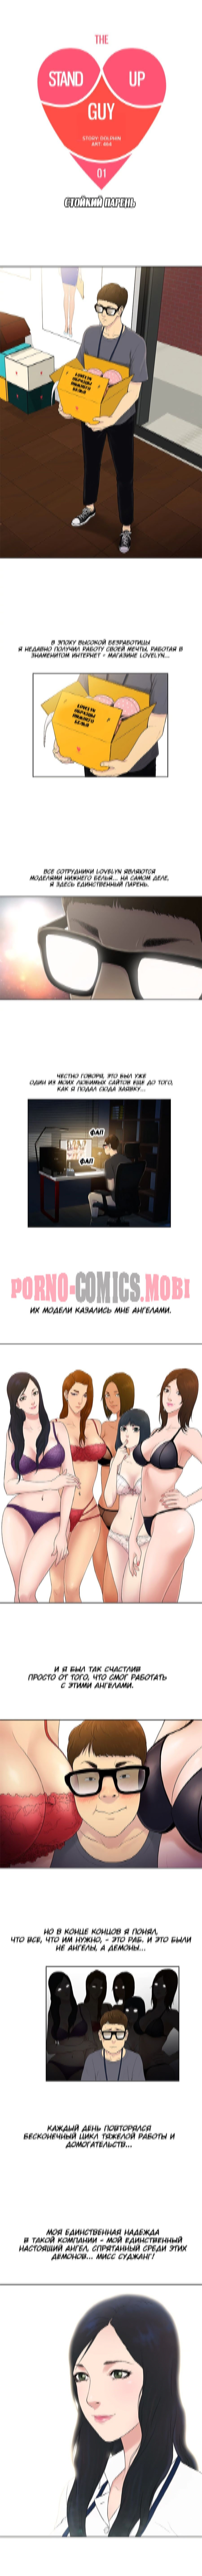 Порно Комикс Стойкий парень смотреть бесплатно онлайн